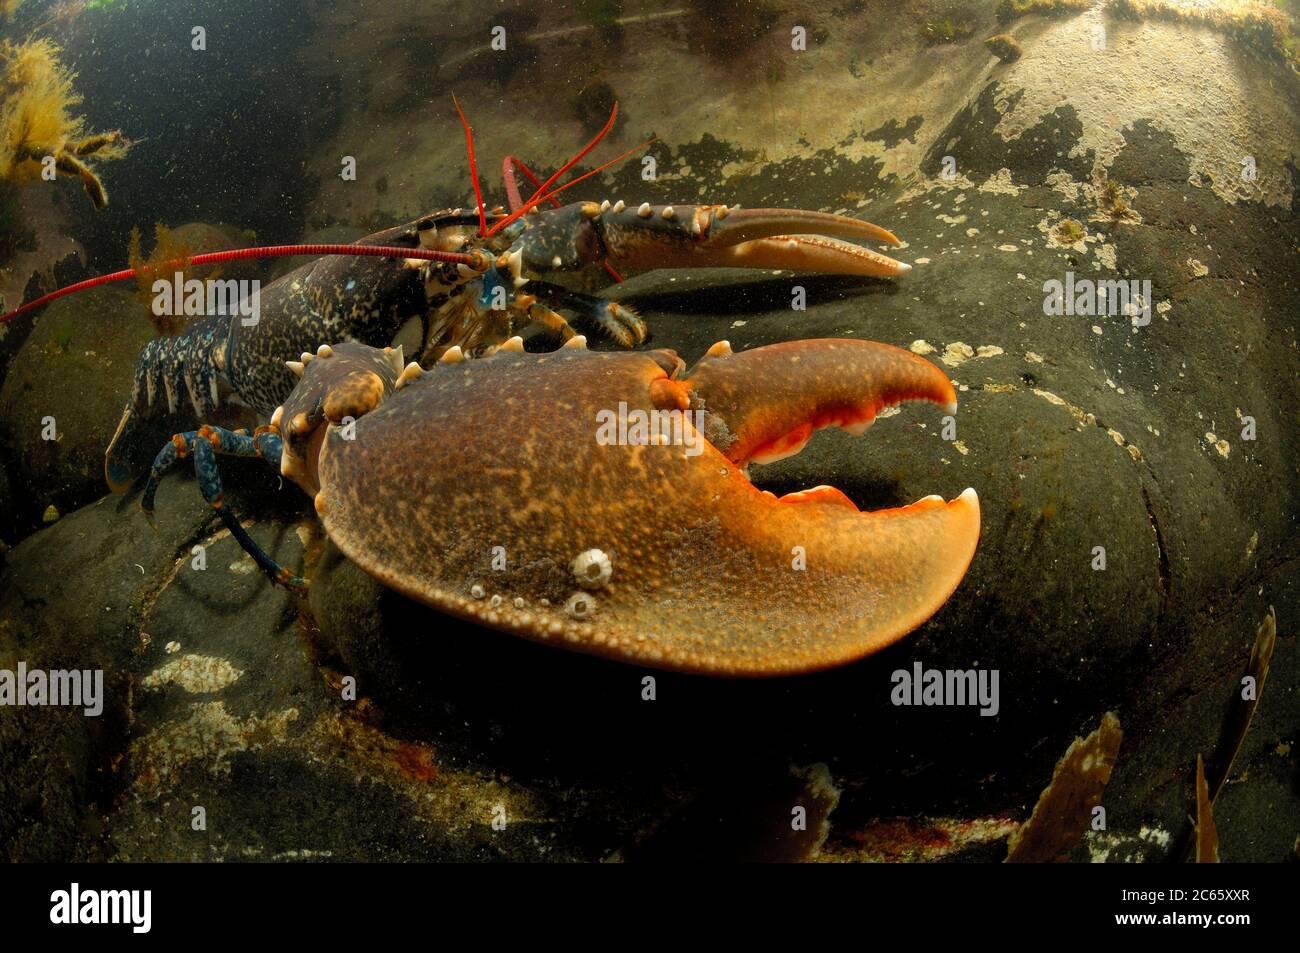 Homard commun, homard à la mâchoire européenne, homard du Maine (Homarus gammarus) (dt. Hummer, Europäischer Hummer) Crustacea Banque D'Images